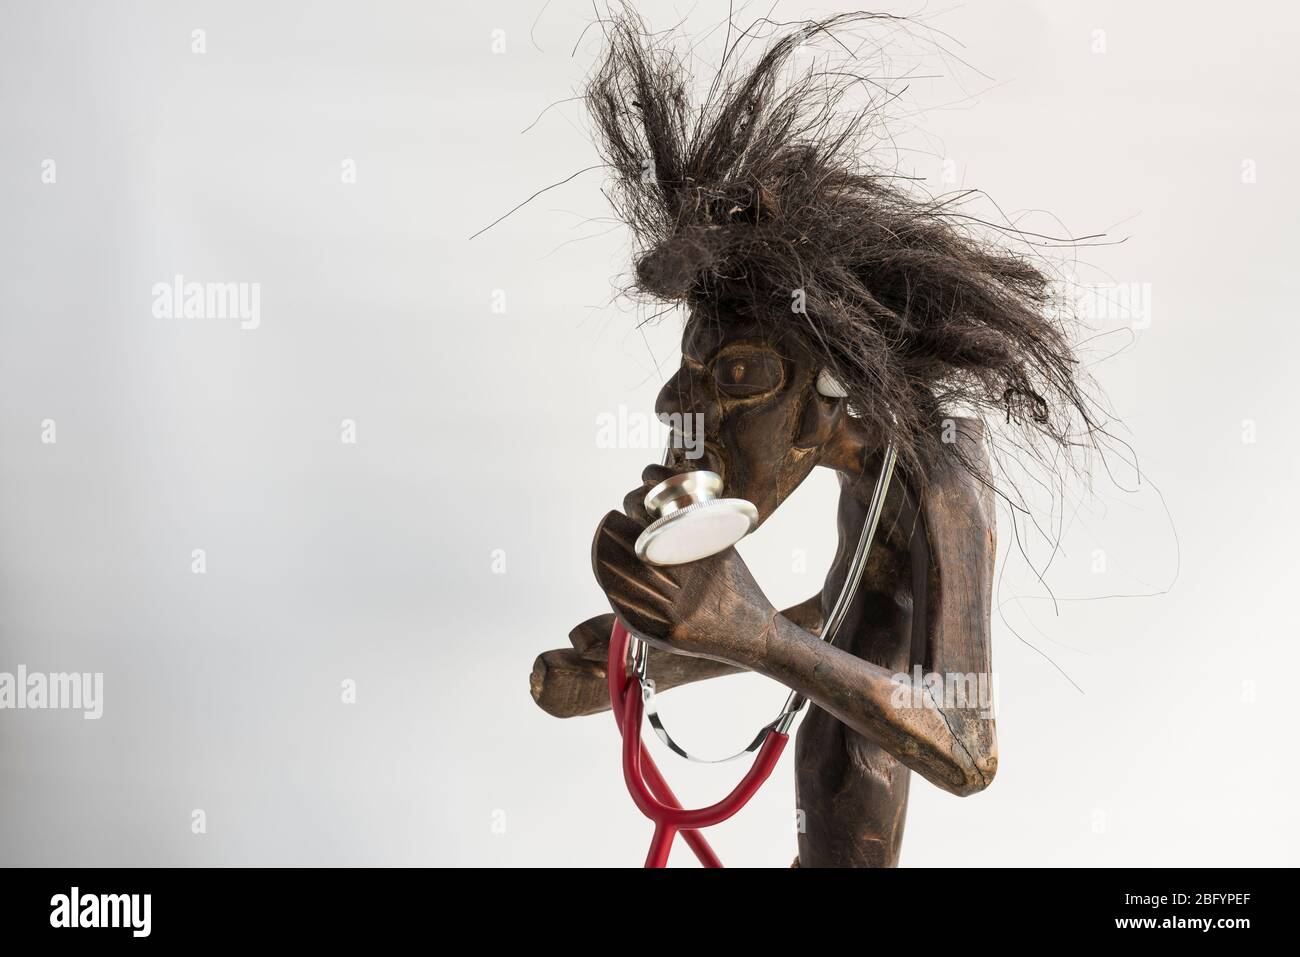 Holz geschnitzte Figur des primitiven Menschen trägt Strohrock & lange schwarze zerzauste Haare und Stethoskop. Konzept; Ehrgeiz, Anspruch, soziale Mobilität. Stockfoto